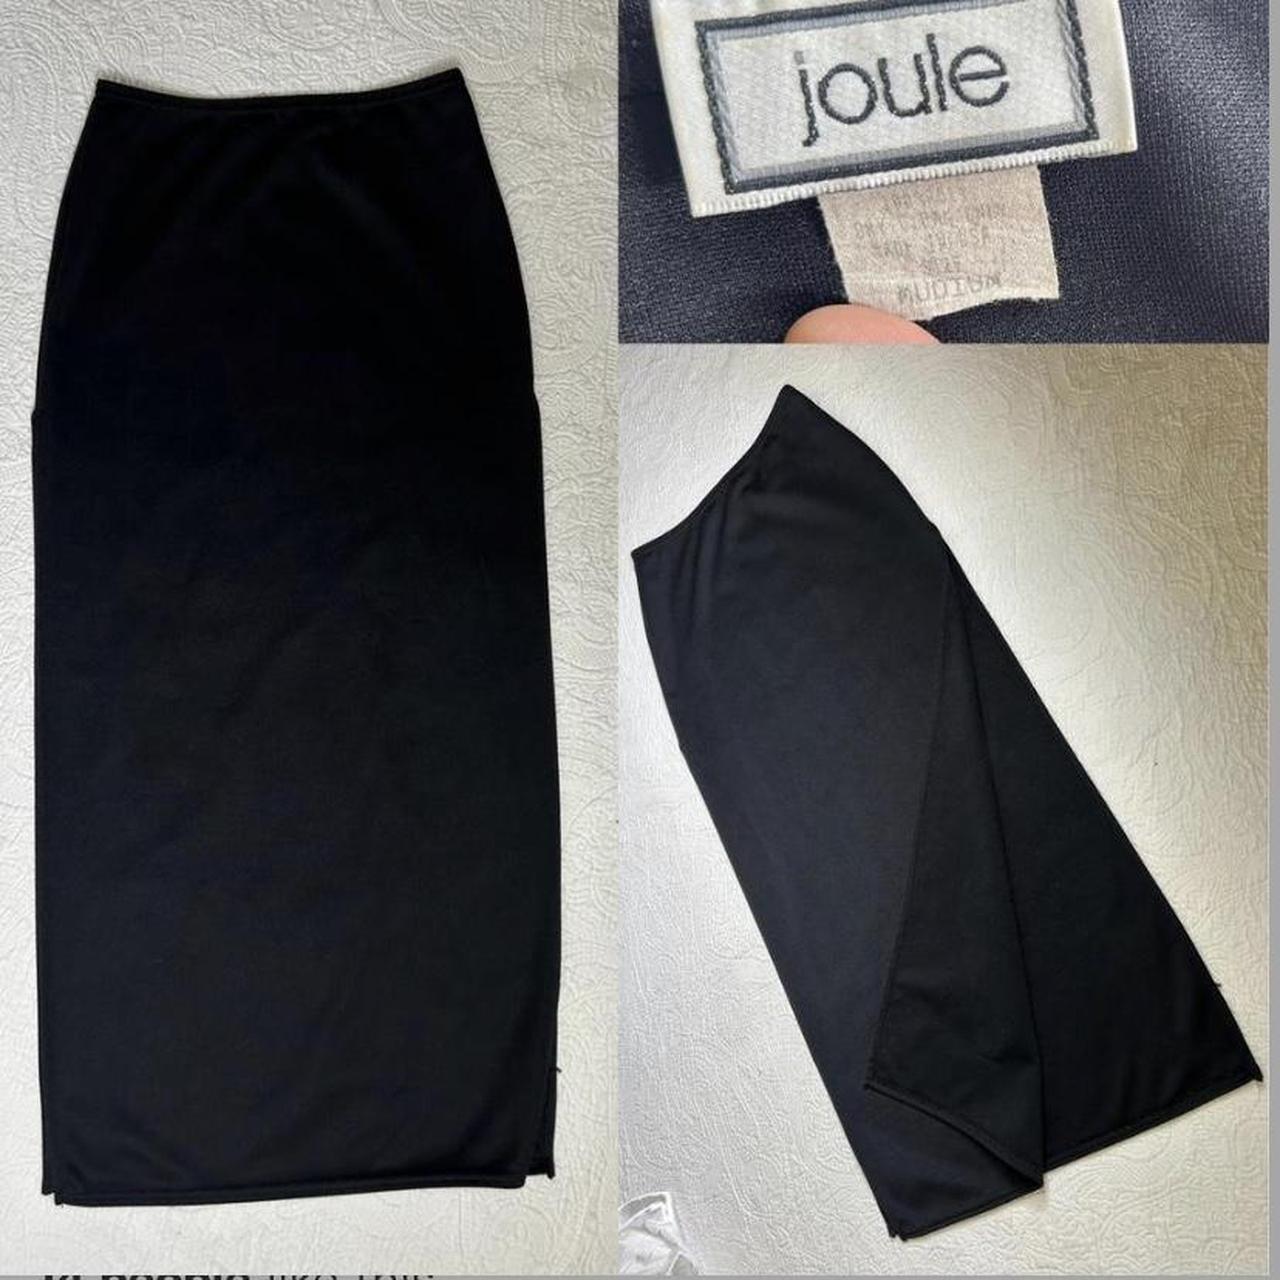 Joules Women's Black Skirt